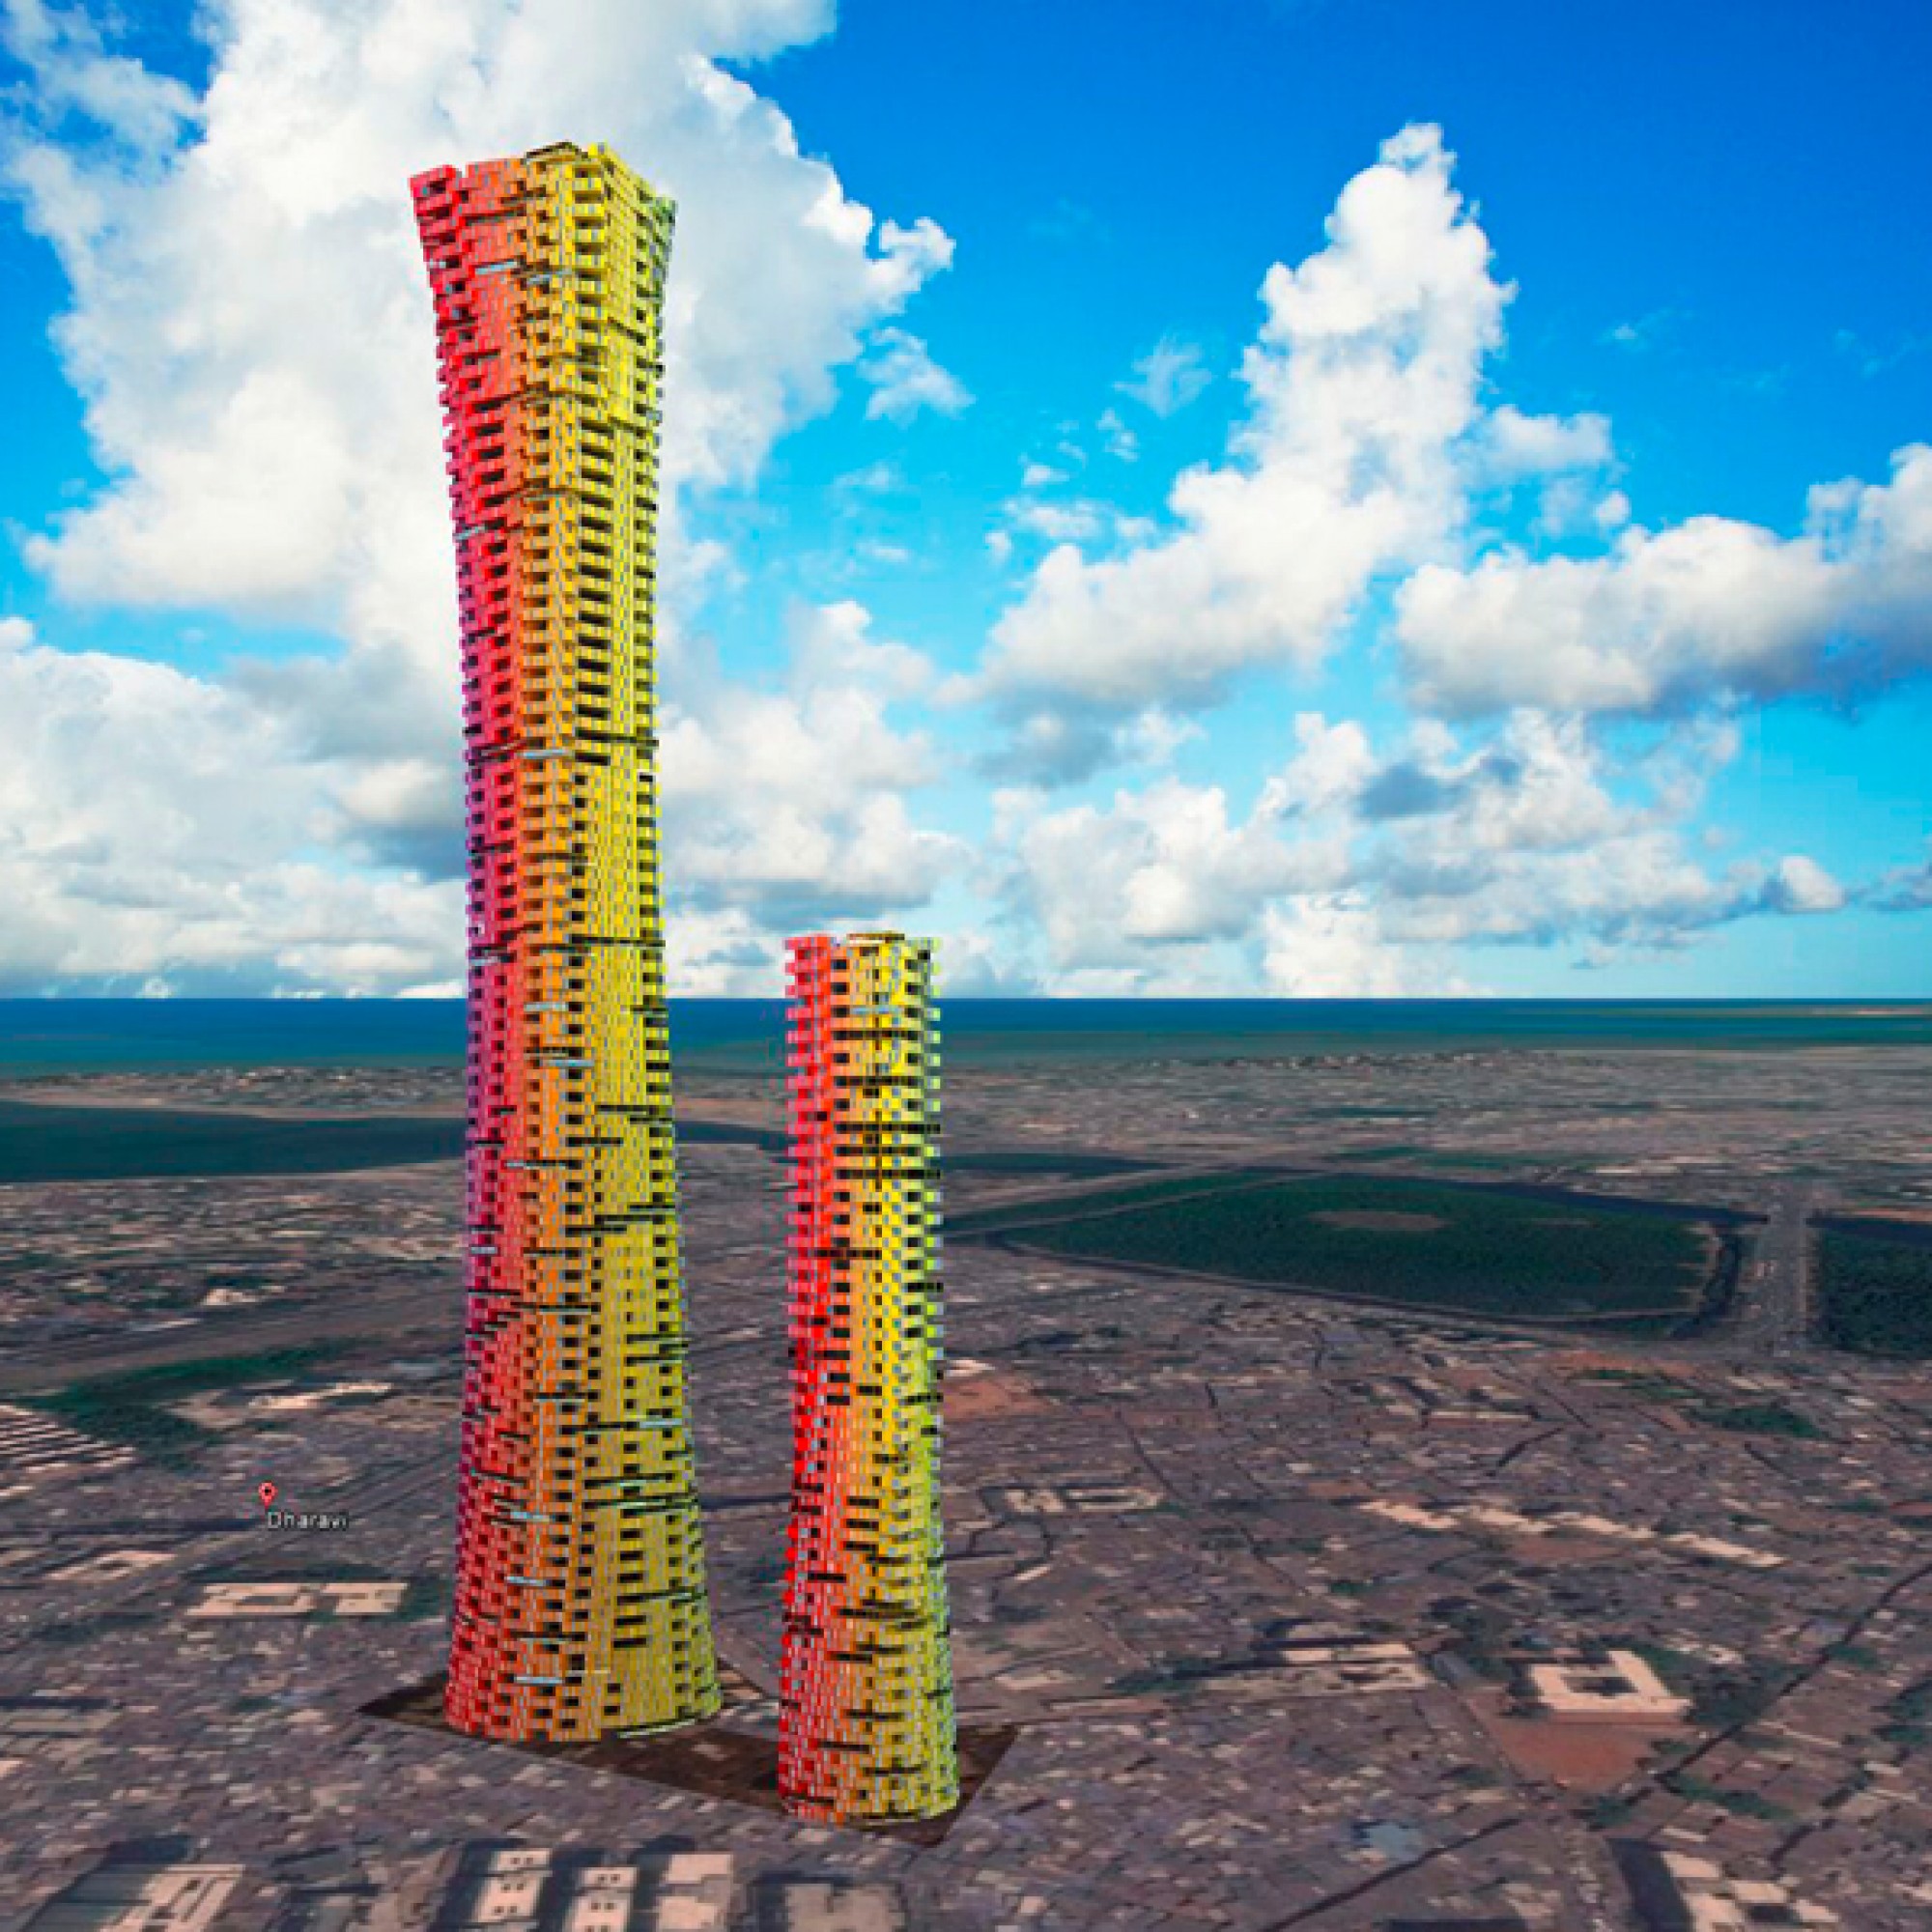 ...Containerstapel sollen sich die beiden Wolkenkratzer in Mumbais Himmel schrauben. (zvg)